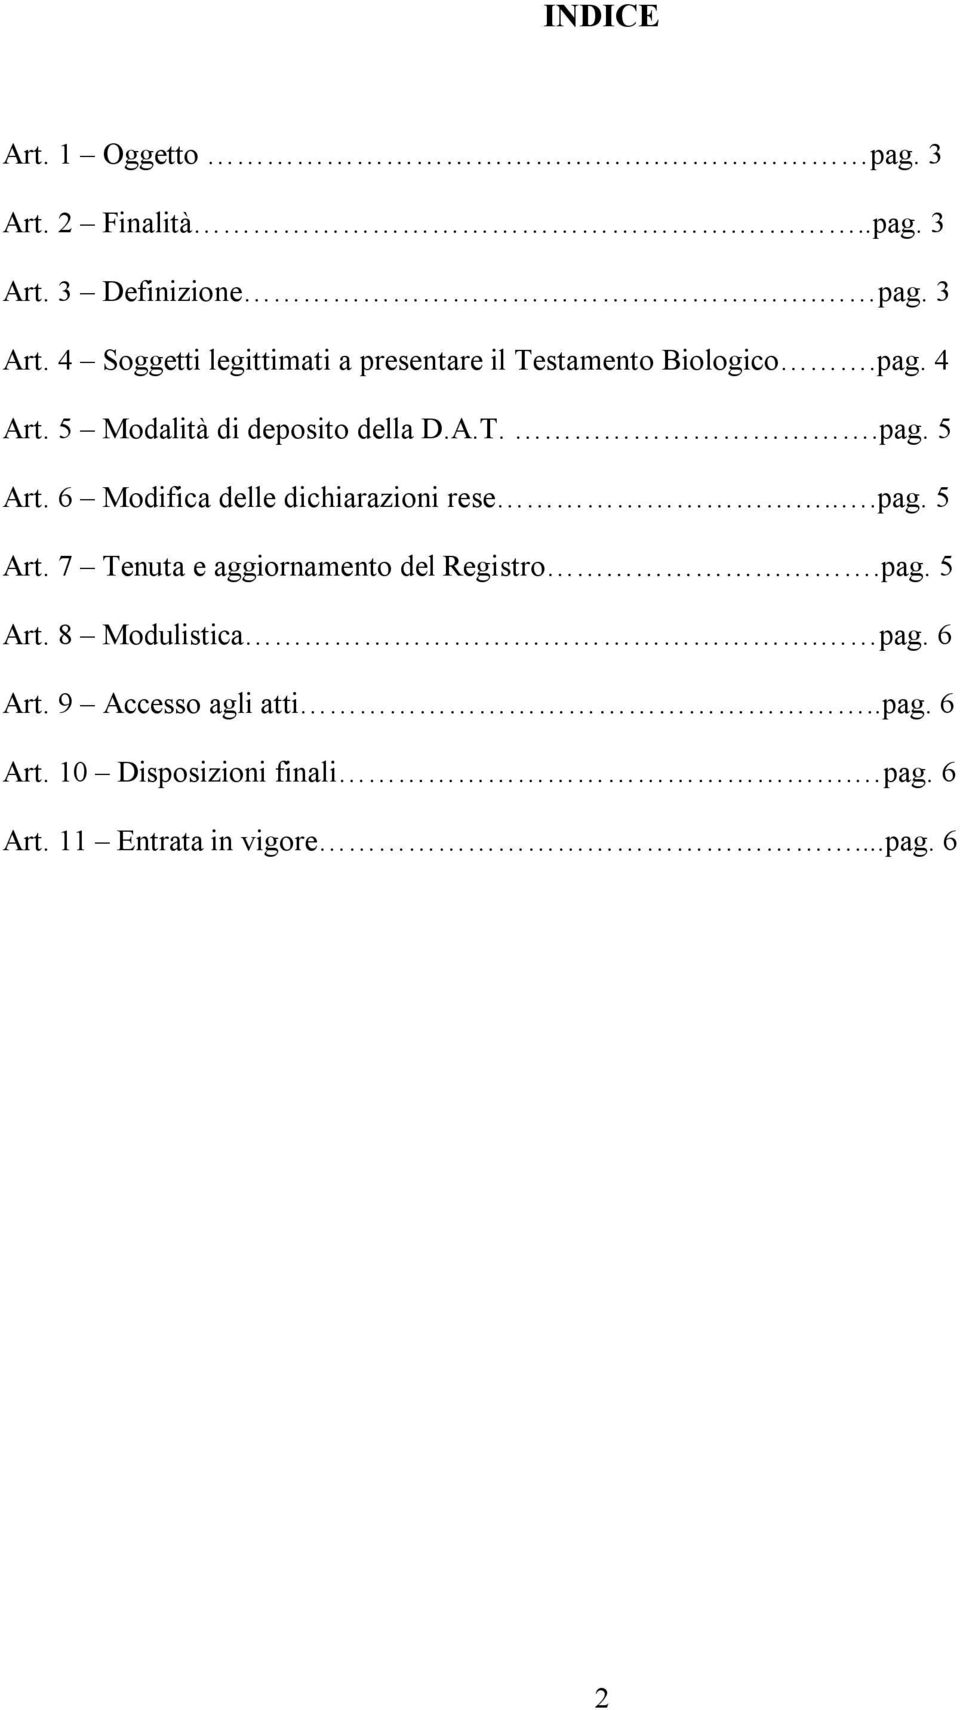 pag. 5 Art. 8 Modulistica. pag. 6 Art. 9 Accesso agli atti..pag. 6 Art. 10 Disposizioni finali. pag. 6 Art. 11 Entrata in vigore.